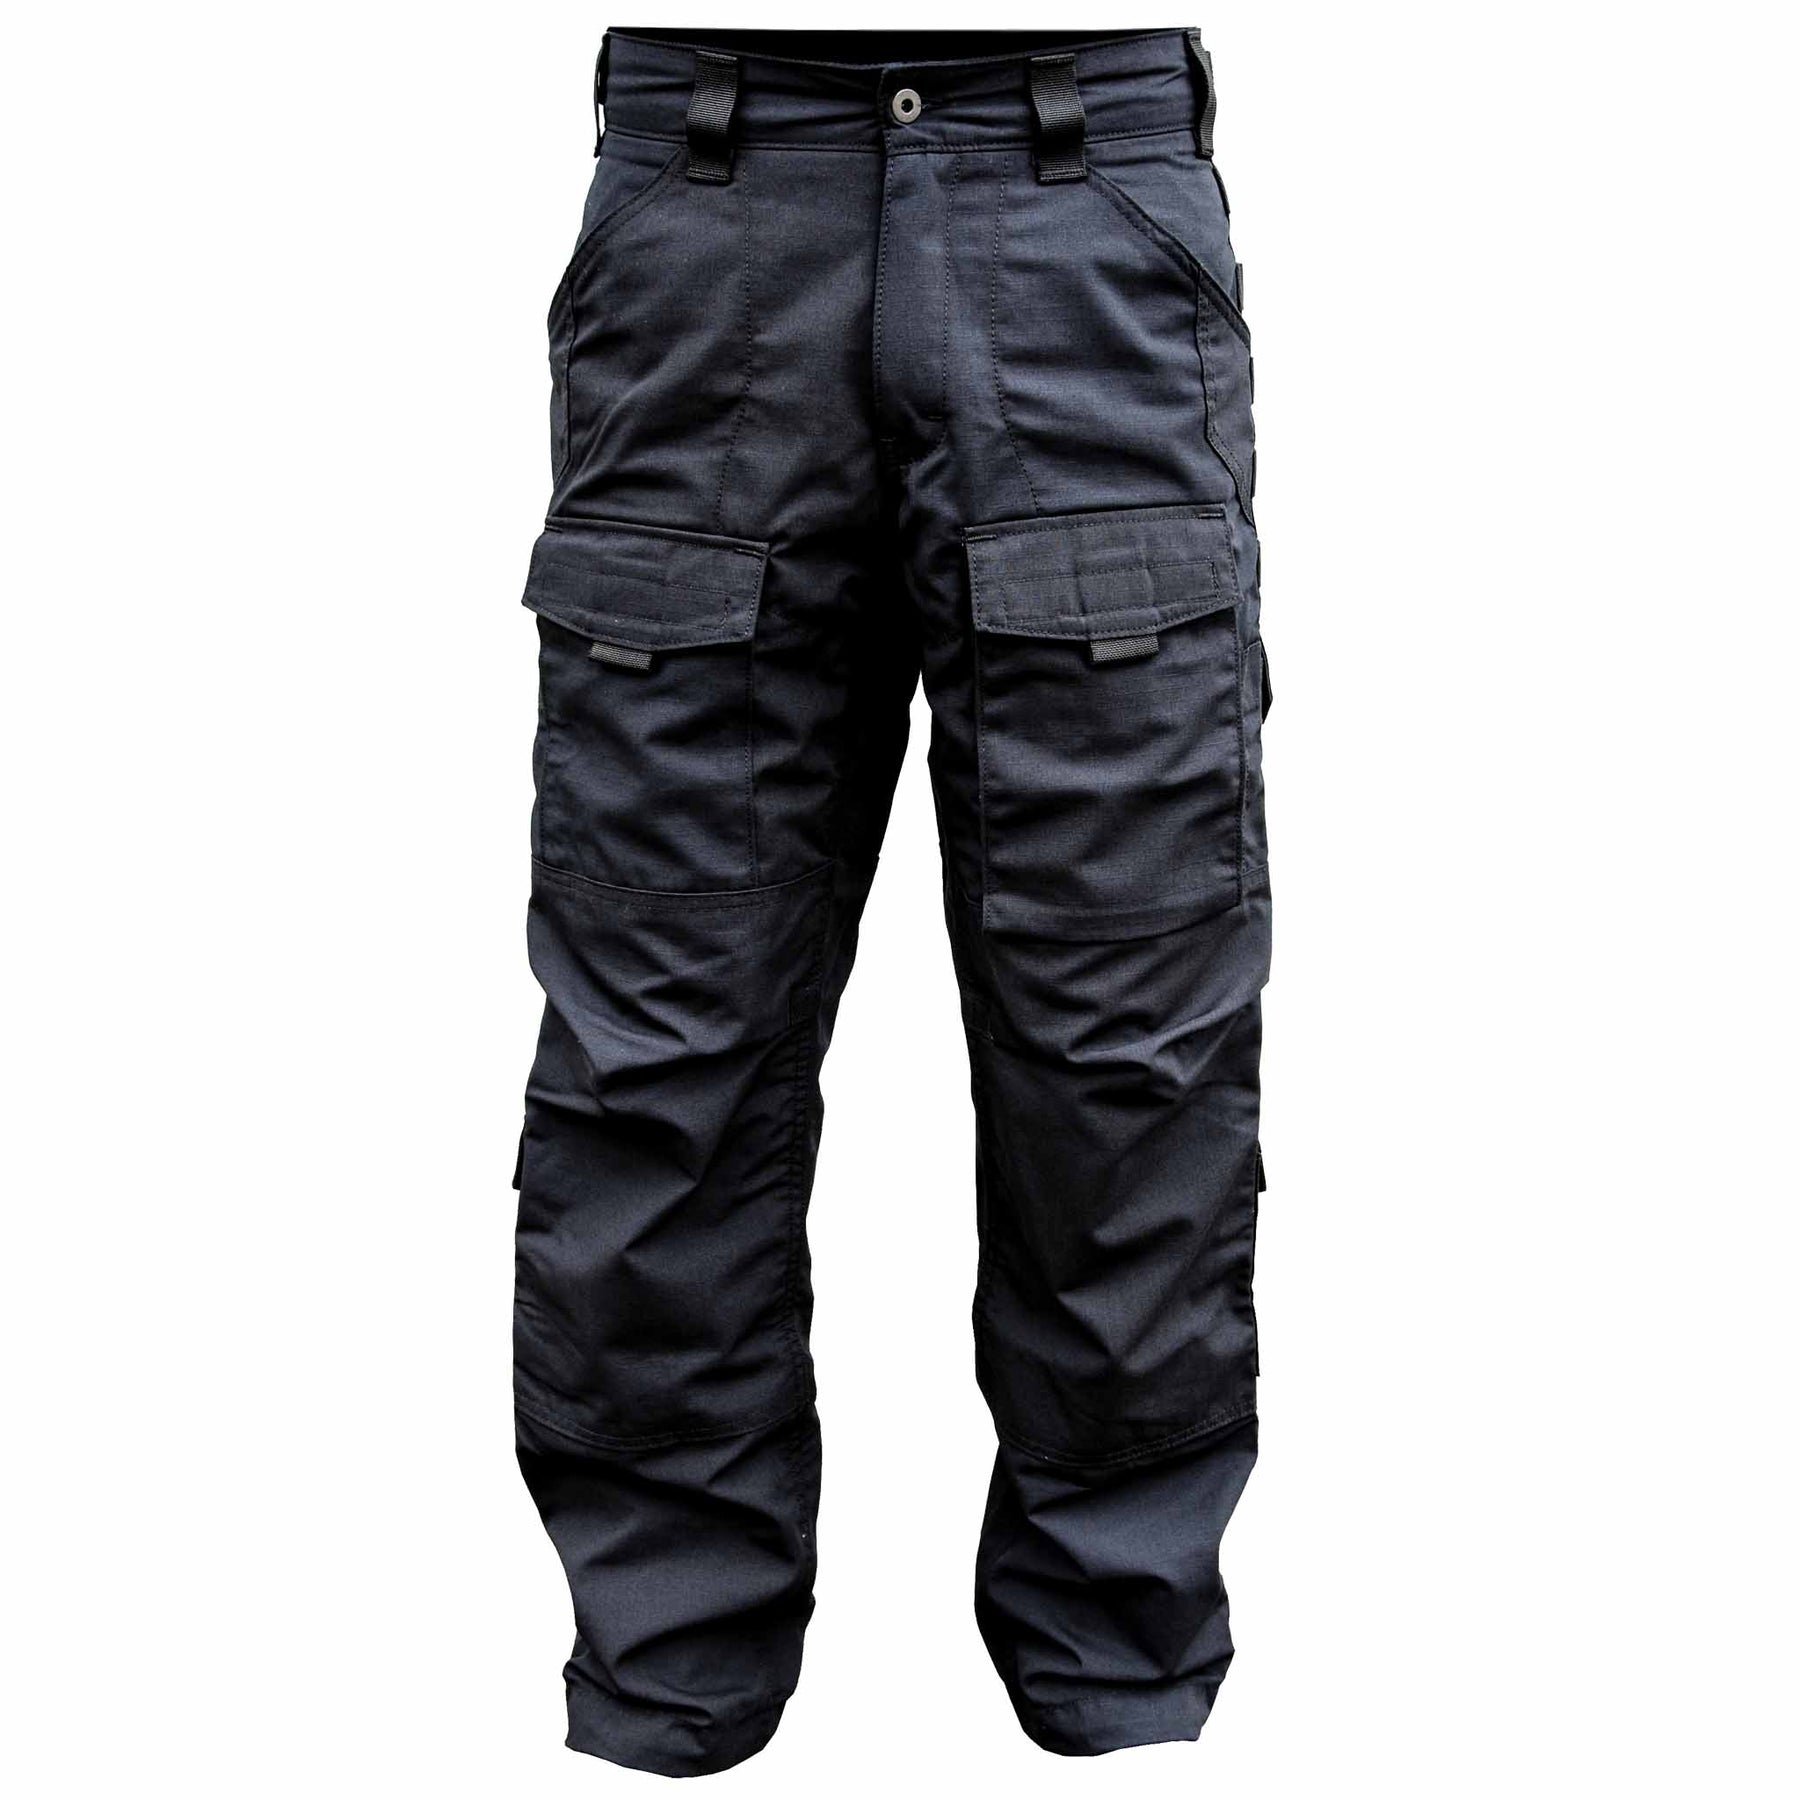 Men's Fashion Outdoor Tactical Cargo Pants - TACVASEN